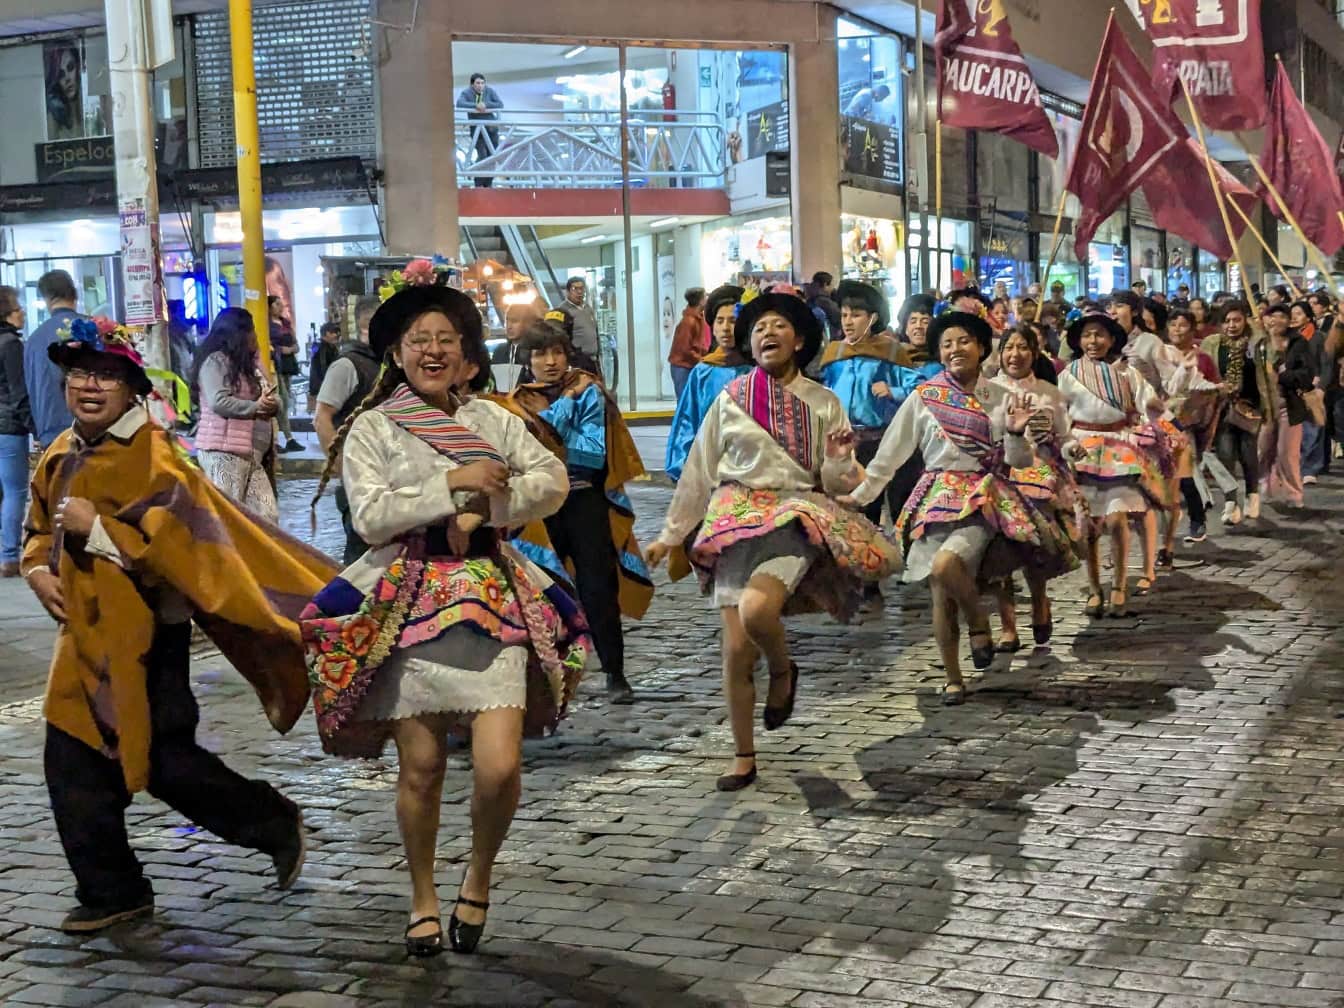 Persone in abiti popolari tradizionali peruviani che ballano per strada durante il festival di strada